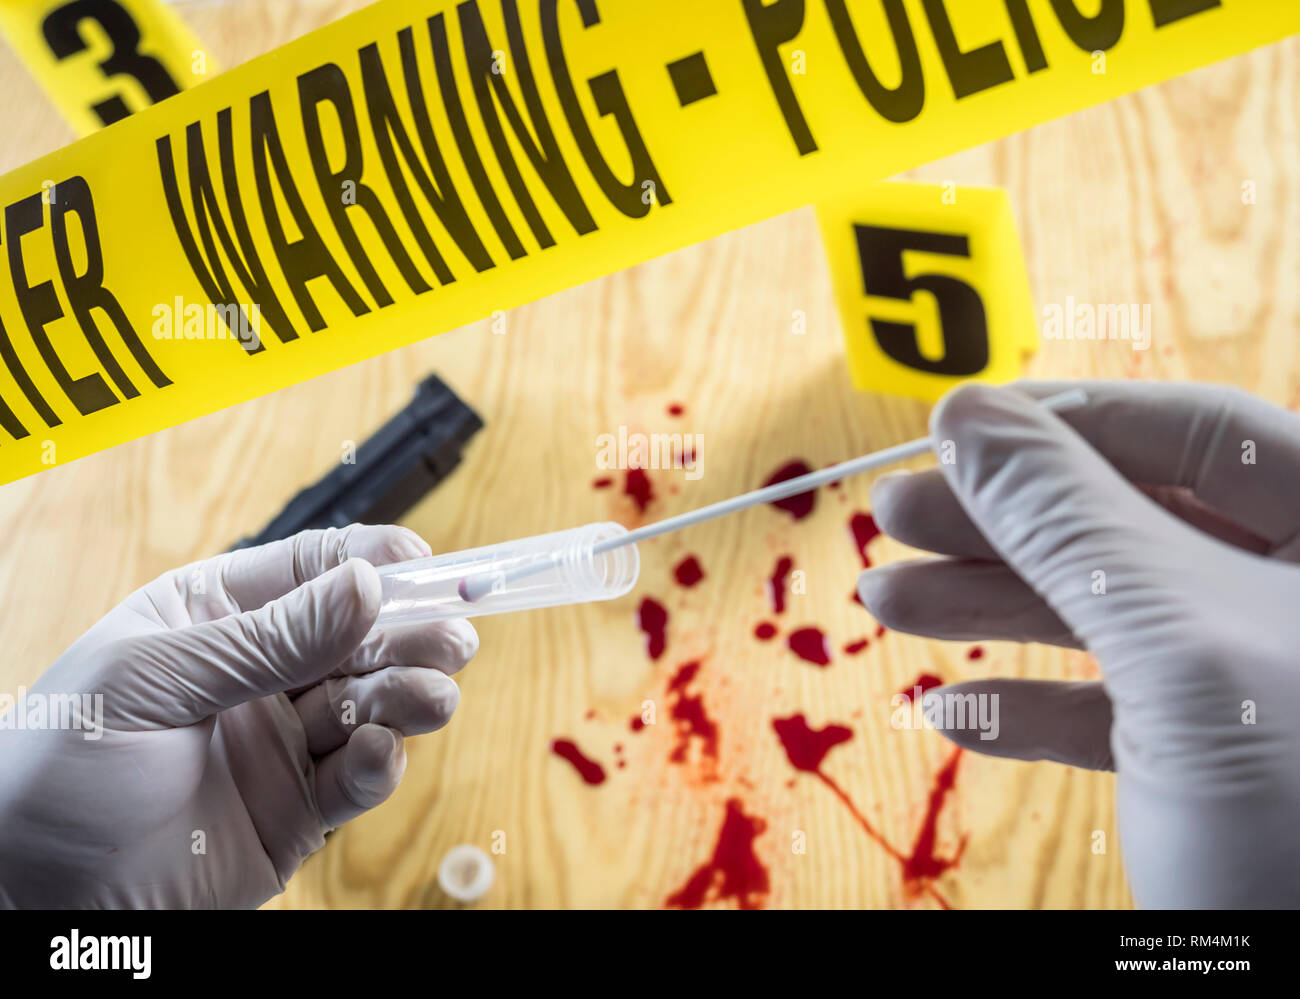 Tatort für das Schneiden von Waffe, Kriminalpolizei nimmt Blutproben in Szene von Mord, konzeptuellen, begrifflichen Bild Stockfoto